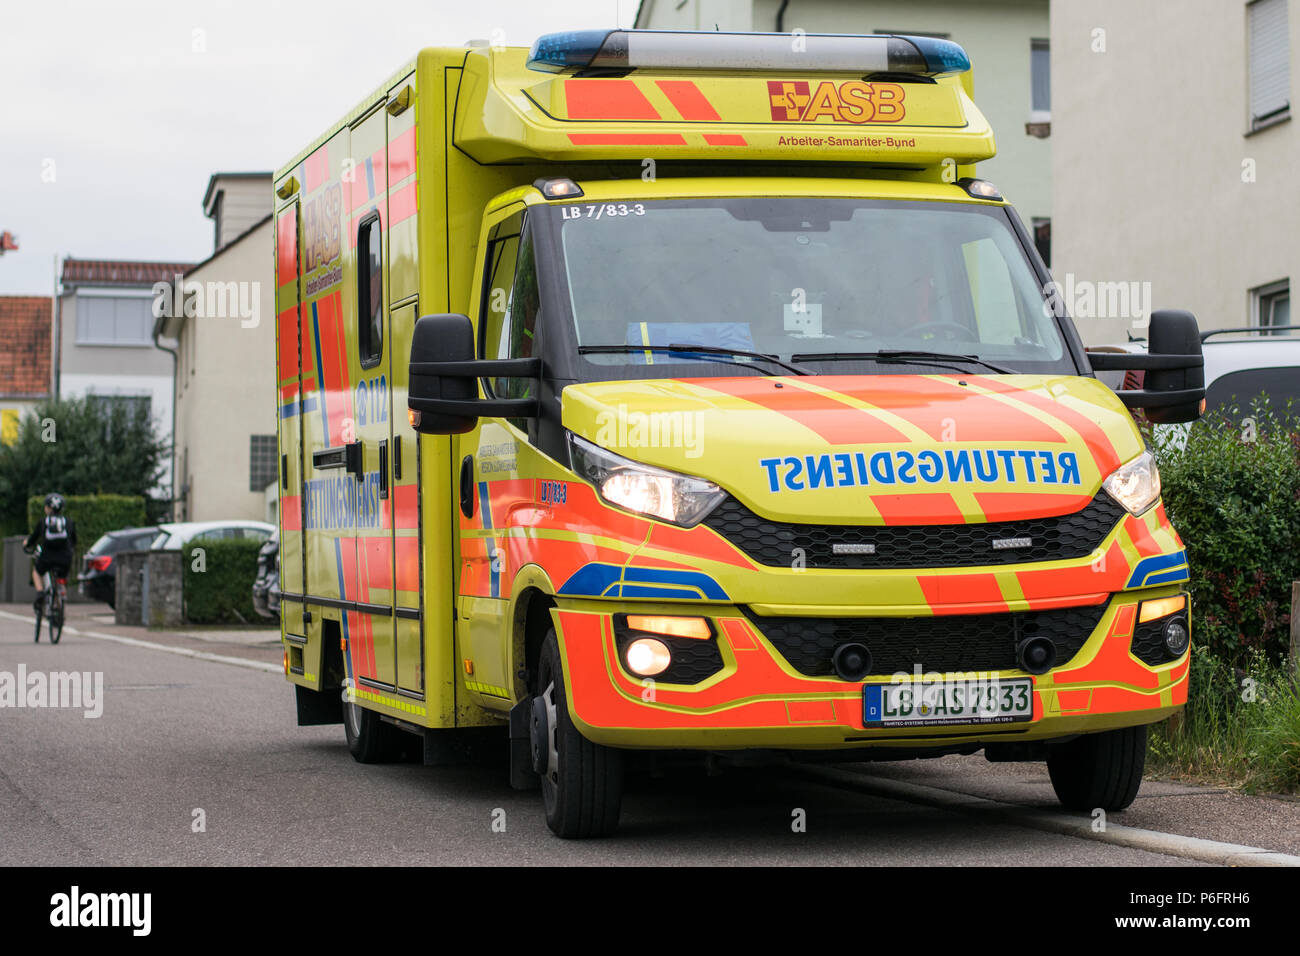 Rettungswagen des ASB im Einsatz - ambulance during an emergancy Stock Photo